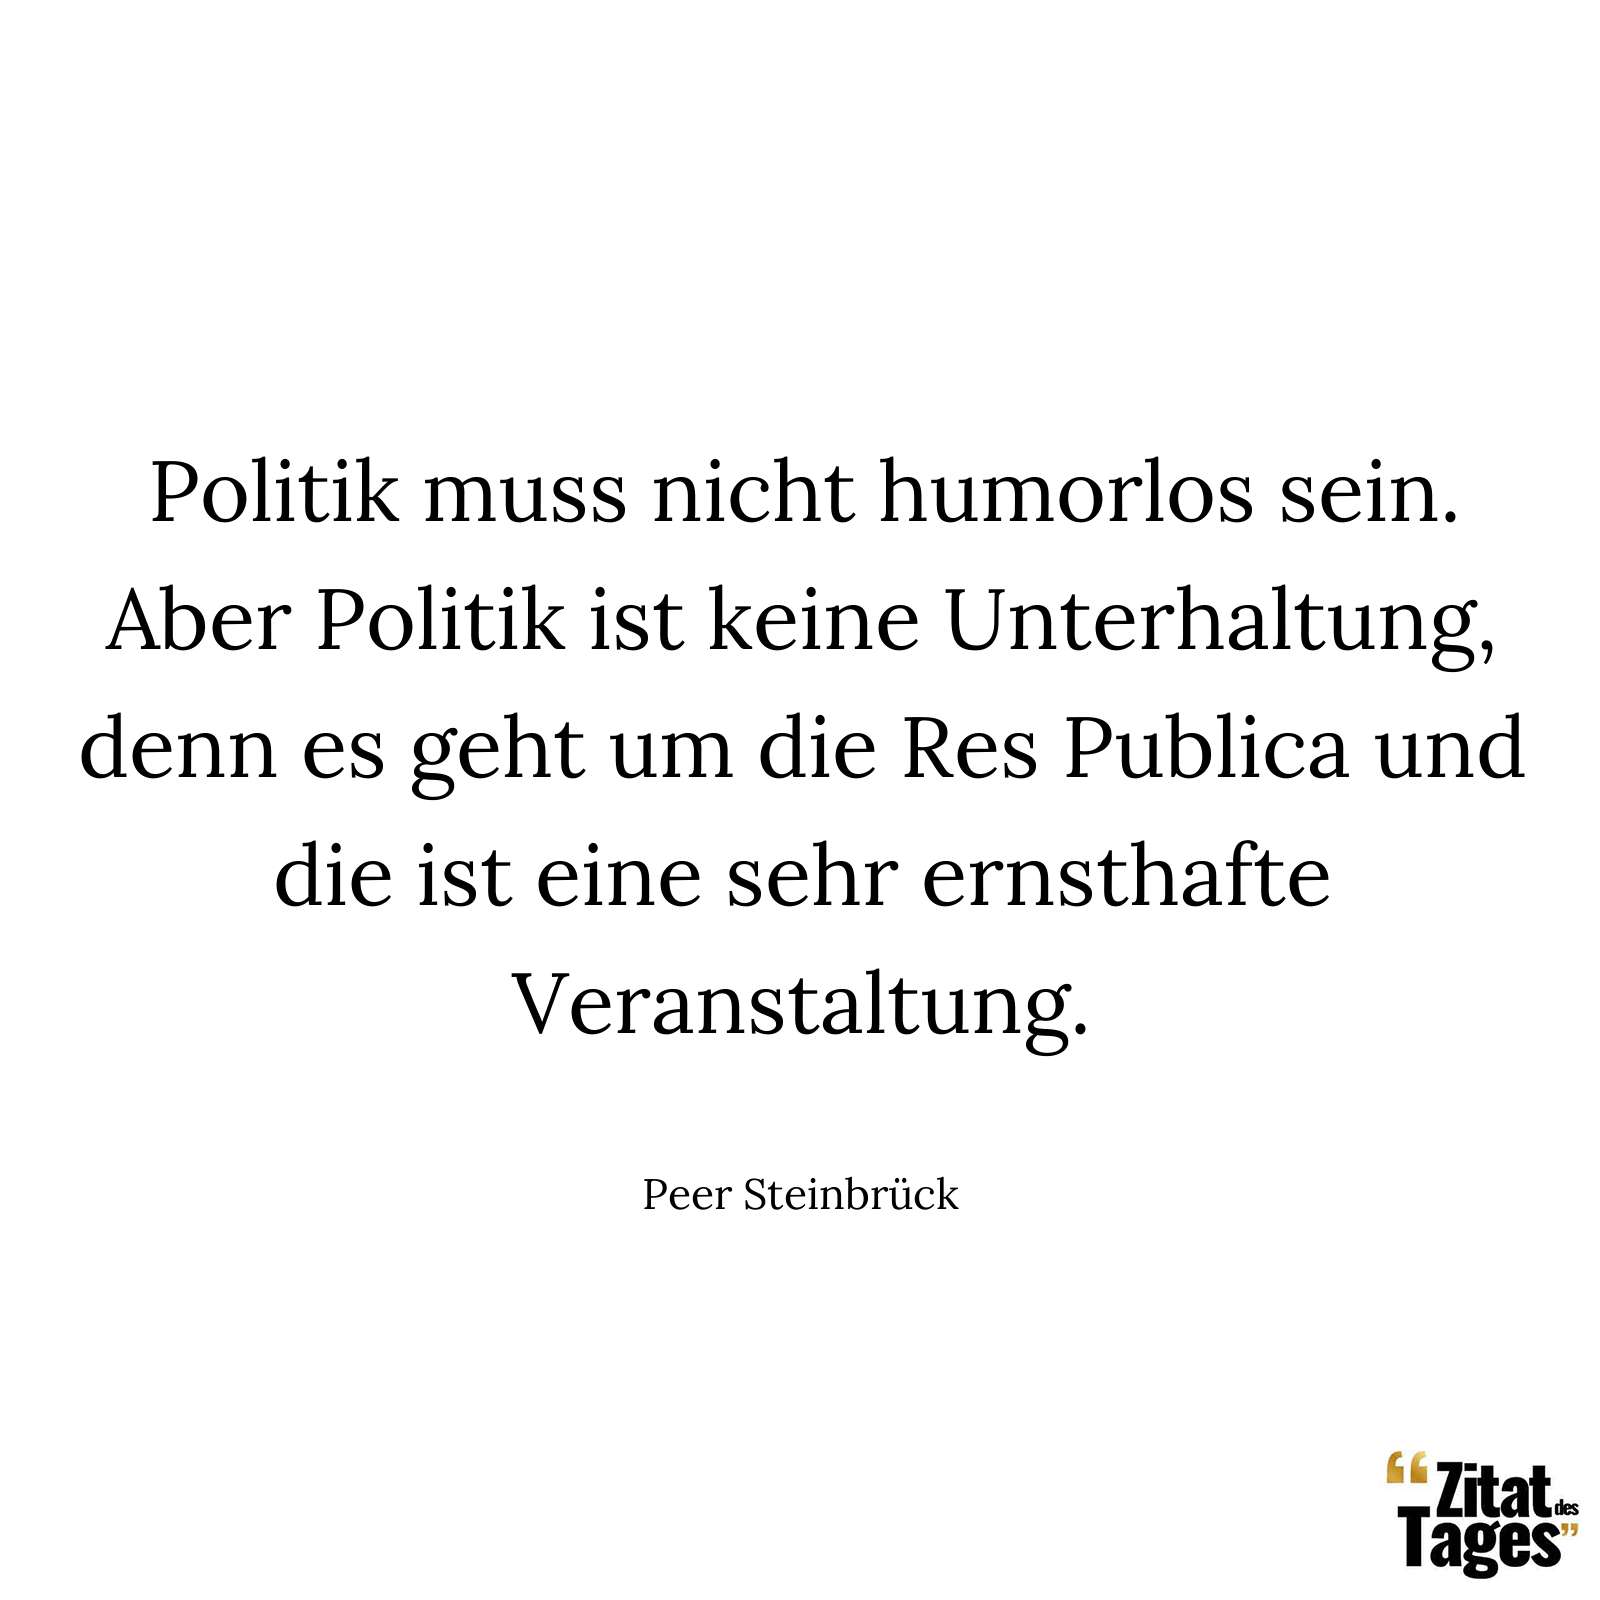 Politik muss nicht humorlos sein. Aber Politik ist keine Unterhaltung, denn es geht um die Res Publica und die ist eine sehr ernsthafte Veranstaltung. - Peer Steinbrück